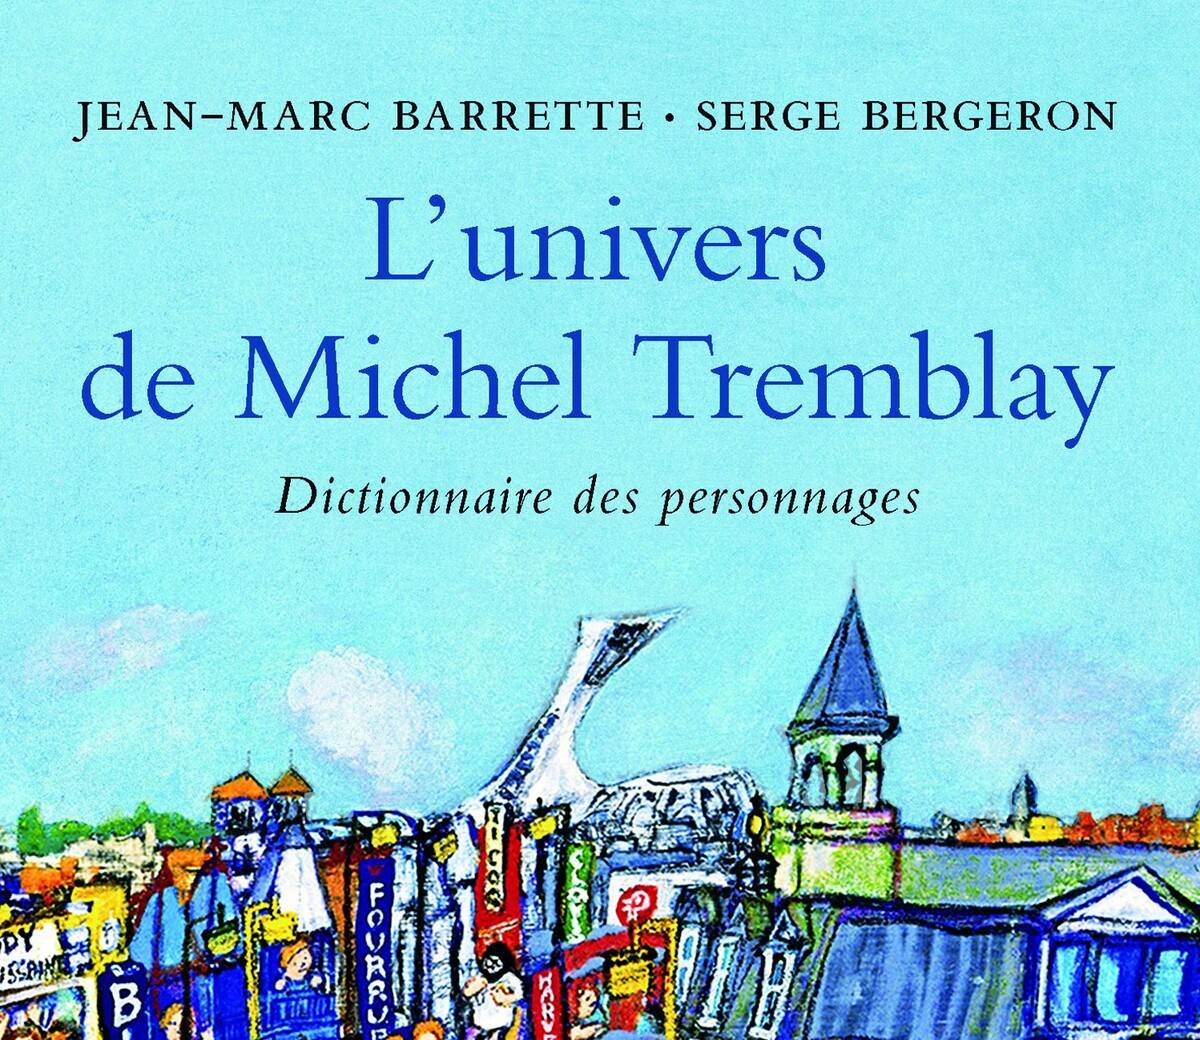 Lunivers-de-Michel-Tremblay-dictionnaire-des-personnages-Jean-Marc-Barrette-Serge-Bergeron-Lemeac-Critique-Litterature-Bible-urbaine